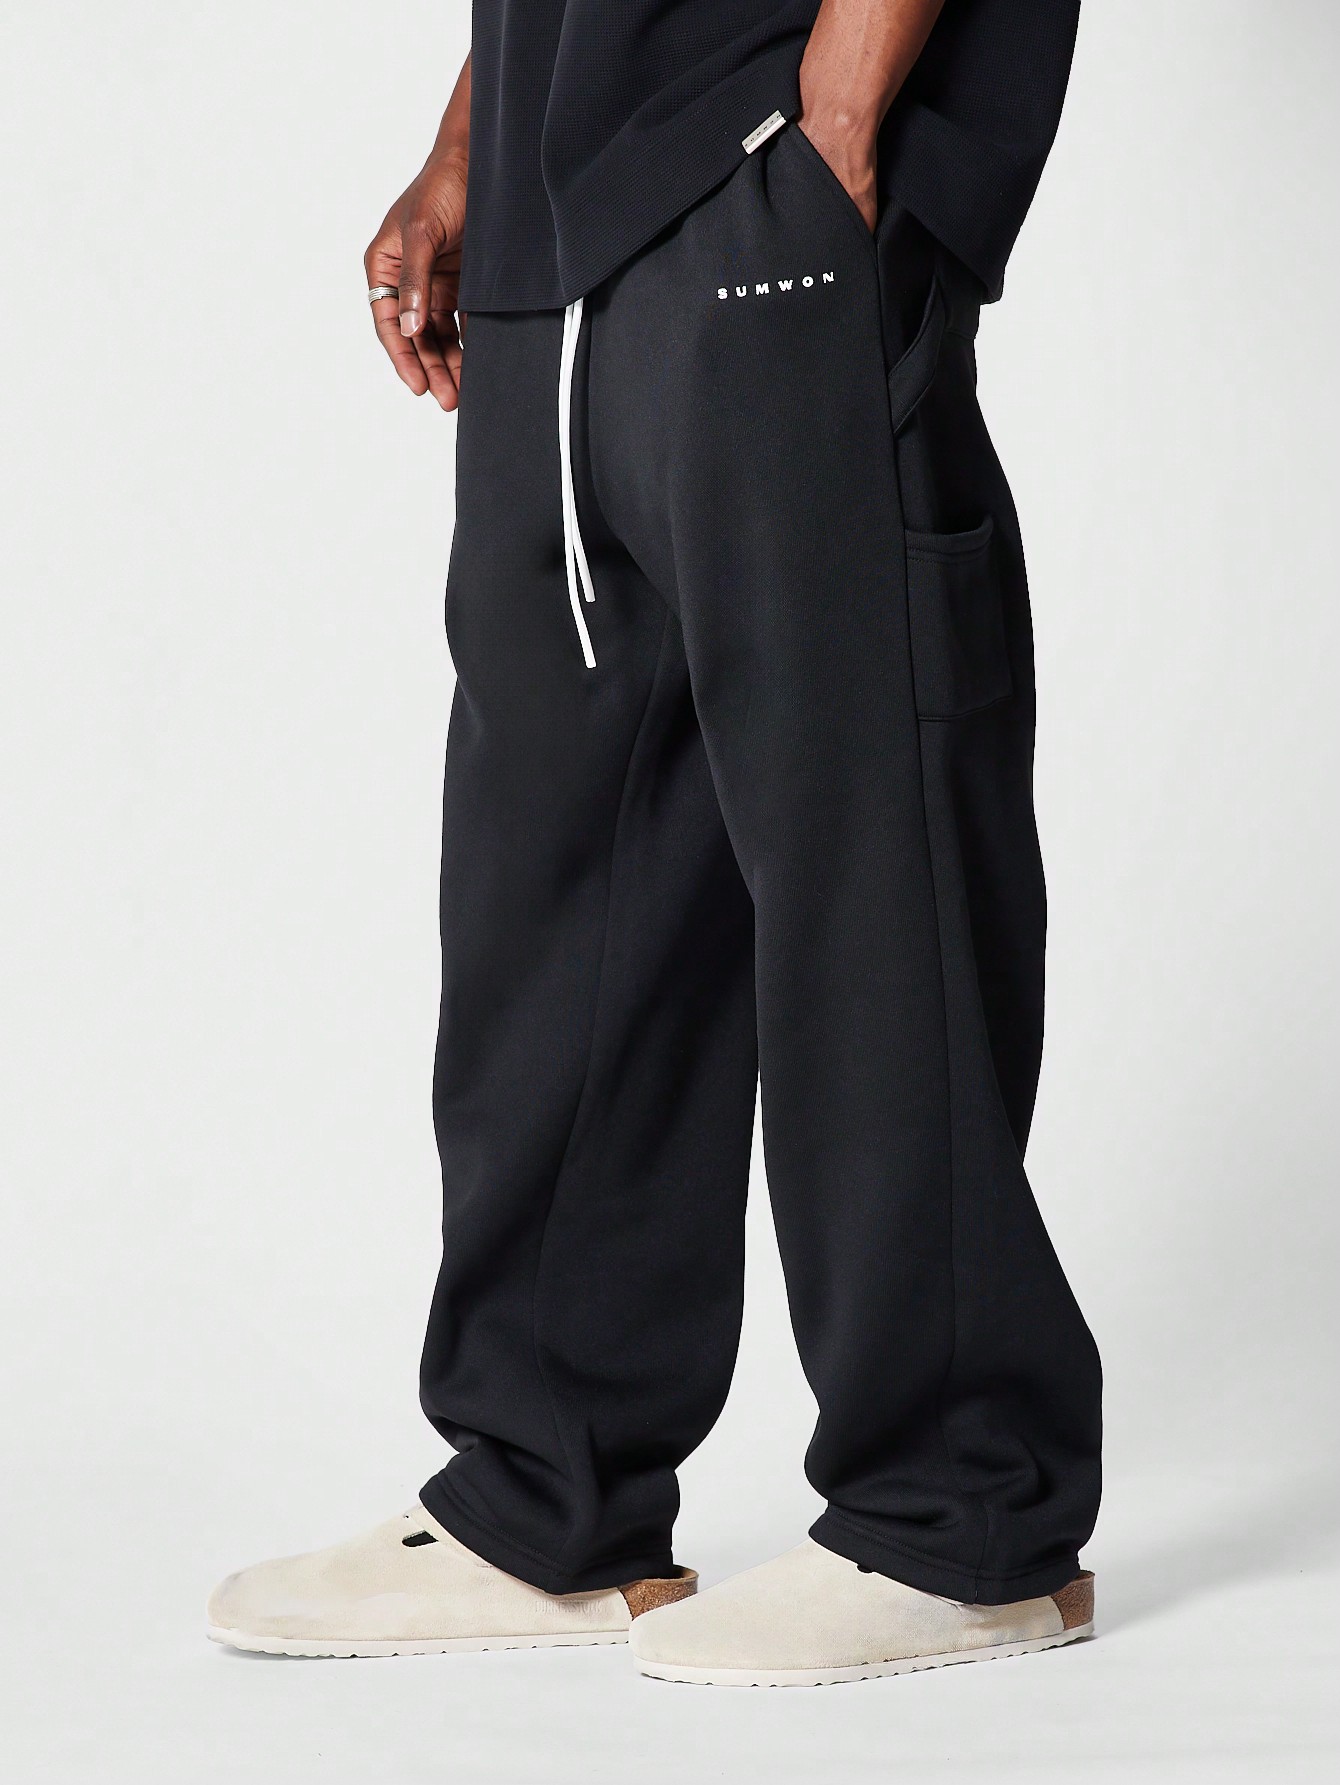 sumwon нейлоновые брюки для костюма мокко браун Джоггеры SUMWON с заниженным шаговым швом, черный